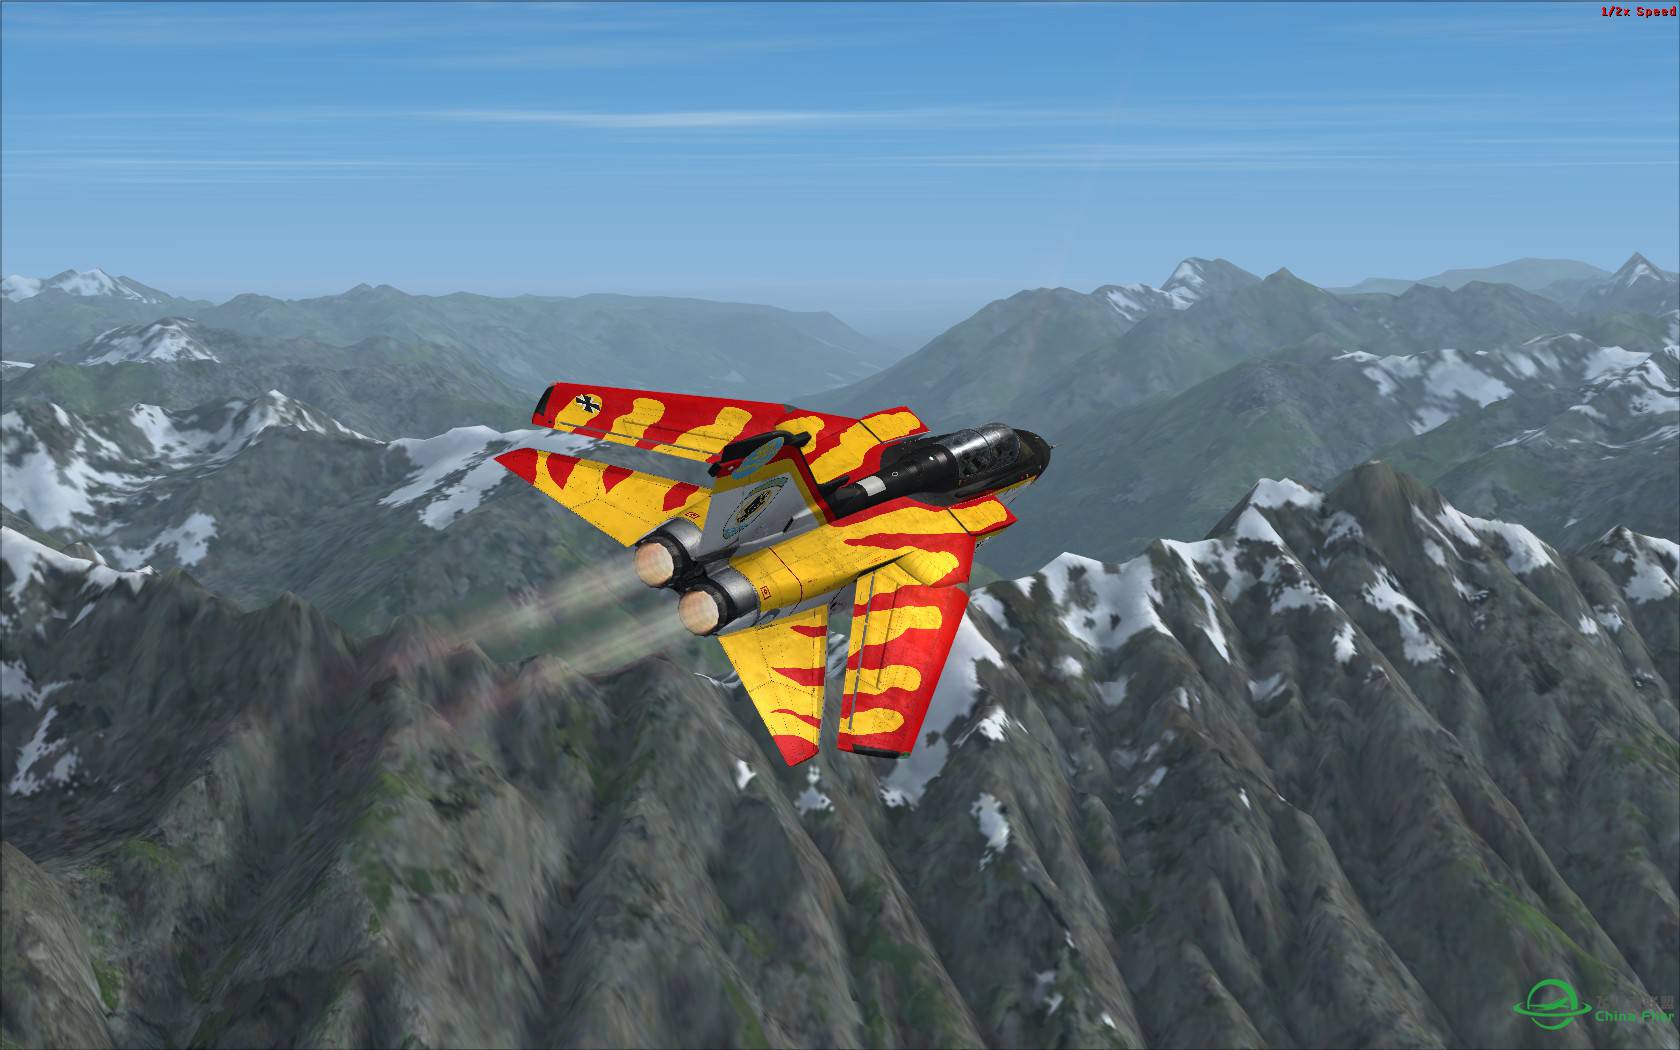 冰与火之歌:最新Just Flight狂风战机火红涂装与蓝色北美冰...-8772 